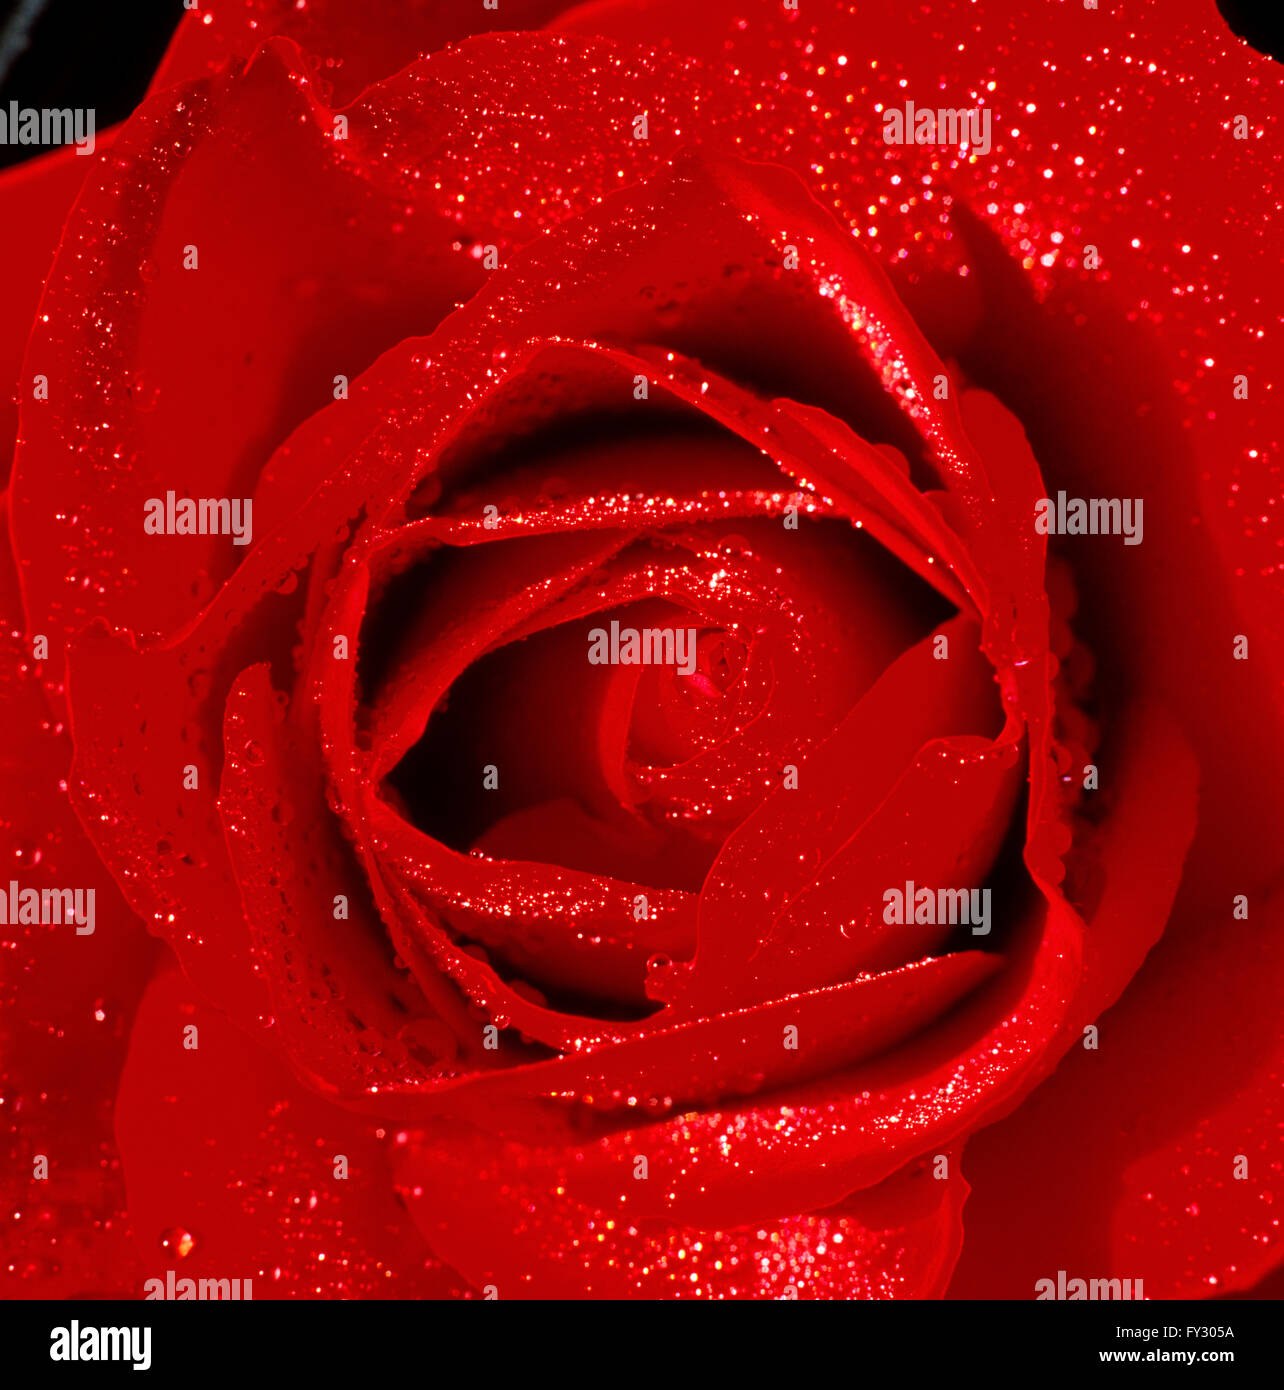 Close-up of a red rose avec des gouttelettes d'eau sur ses feuilles. Banque D'Images